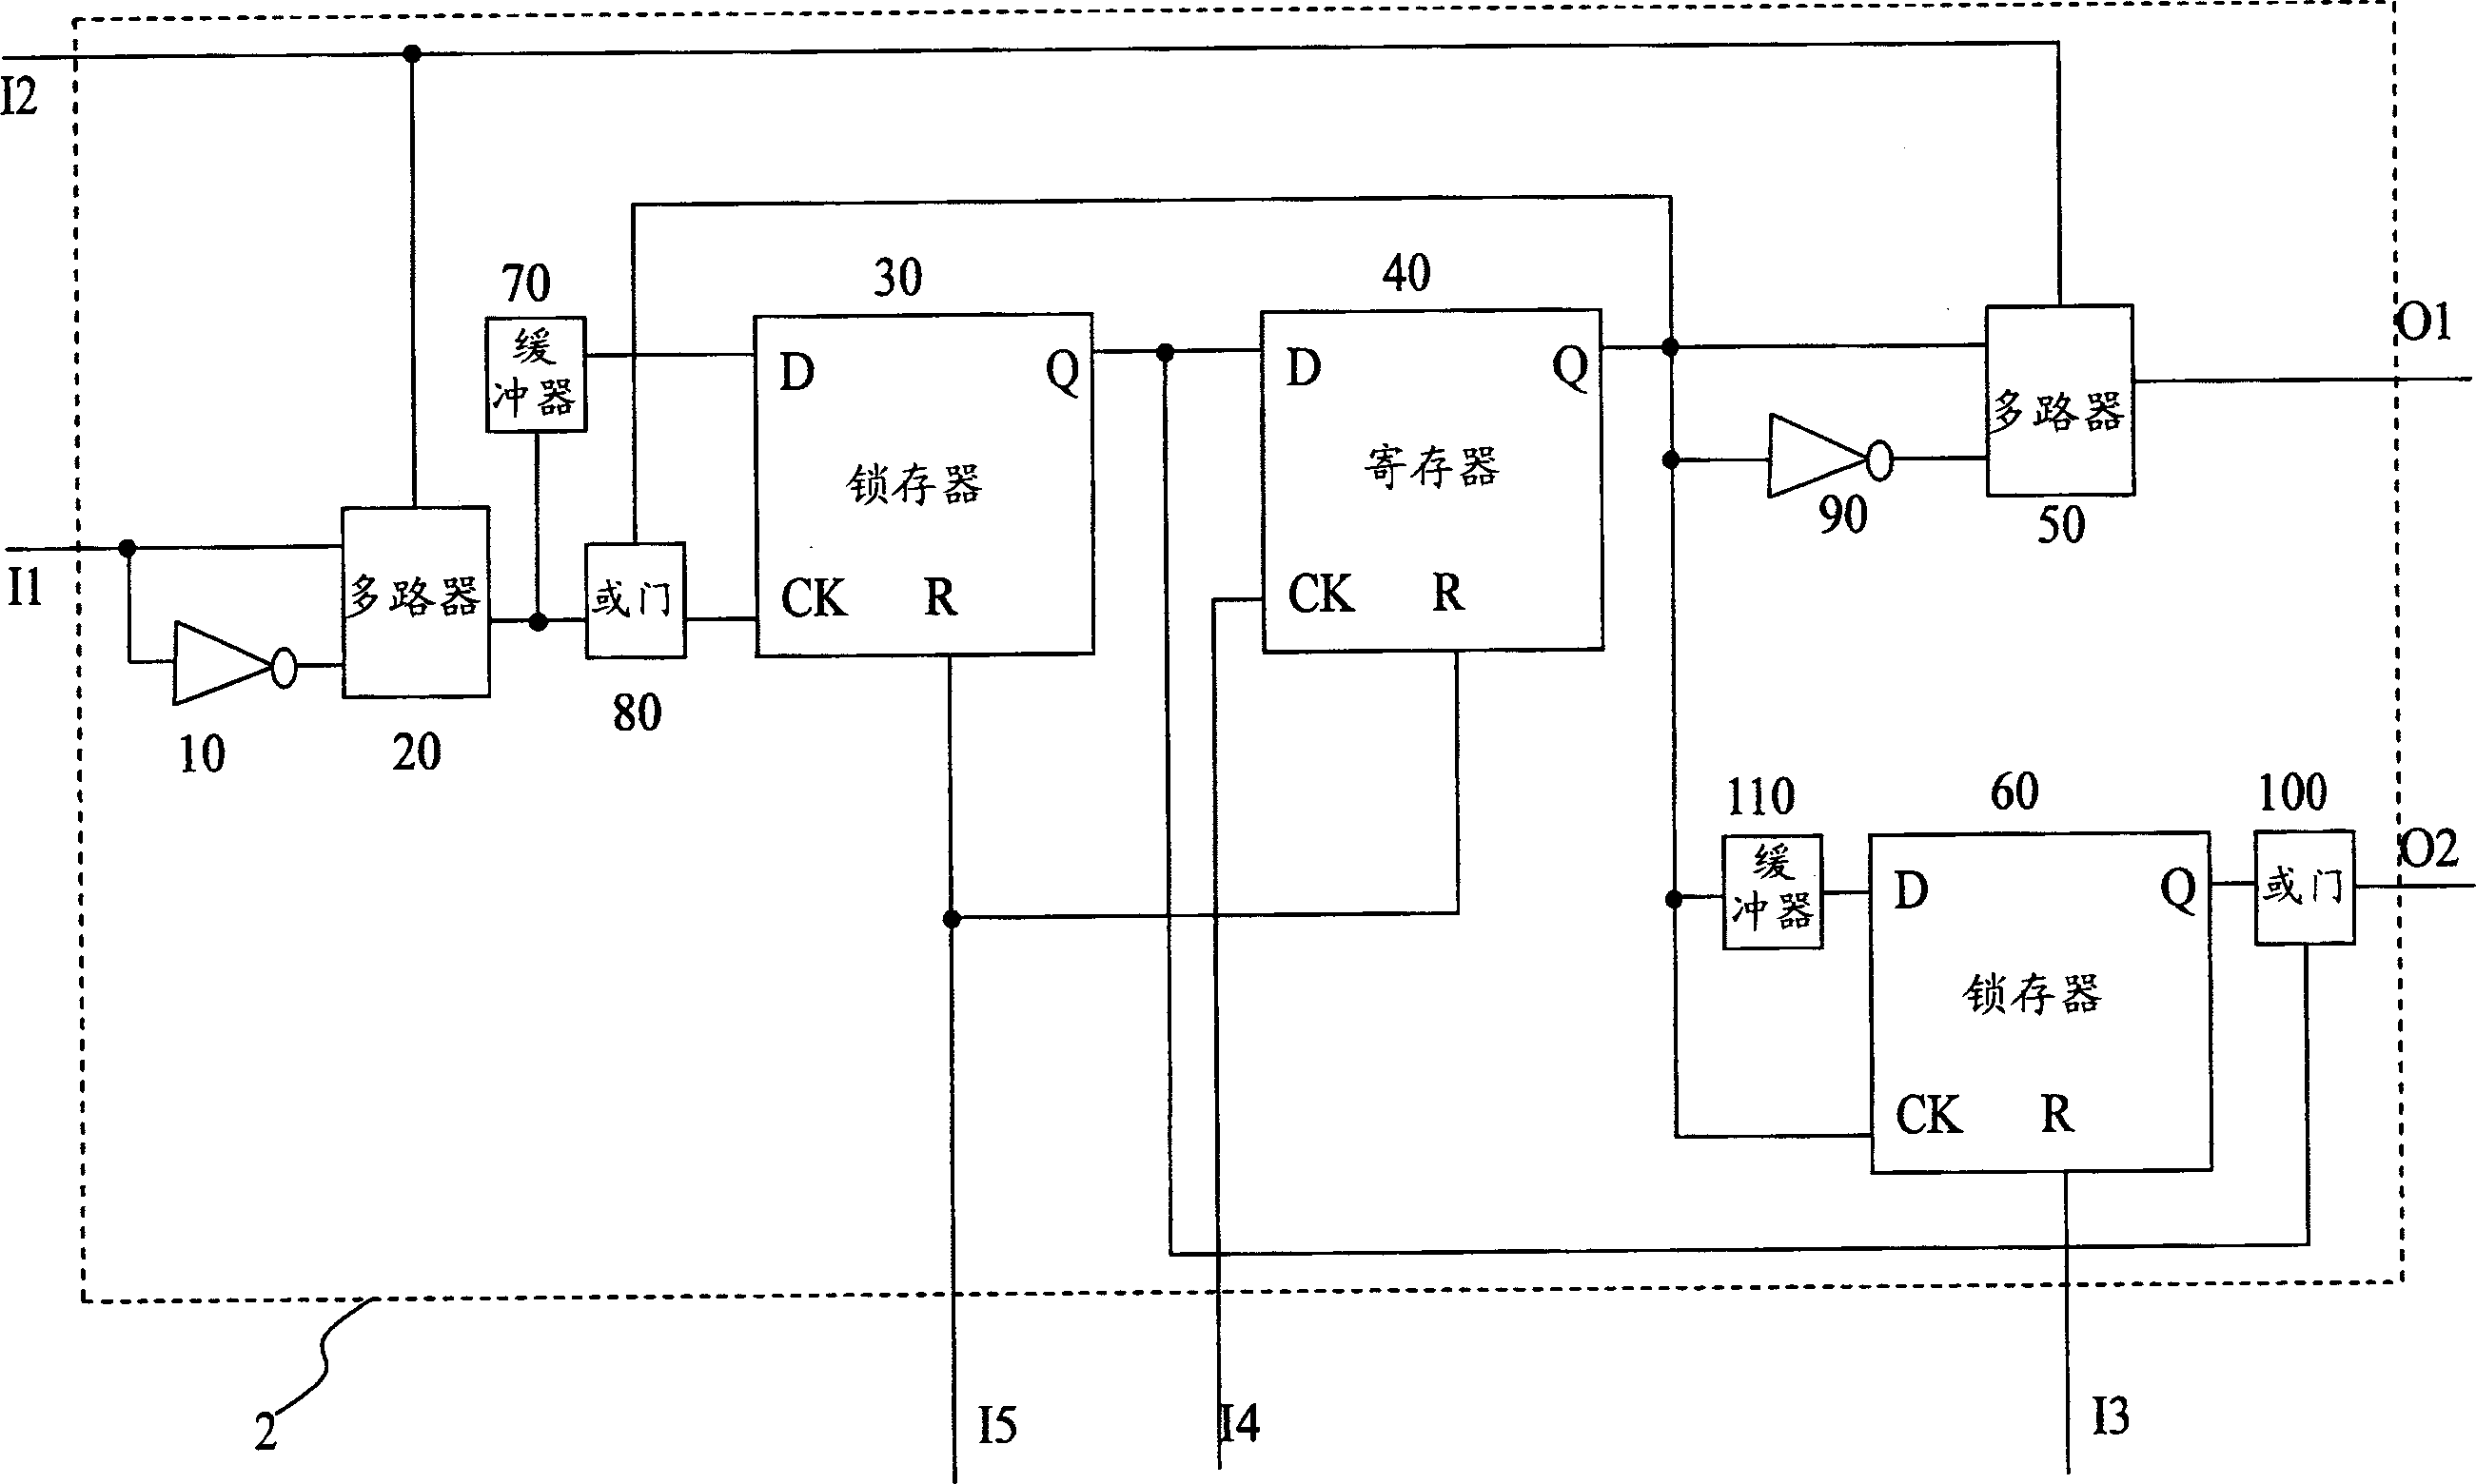 Interrupt controller, interrupt signal pretreating circuit and its interrupt control method